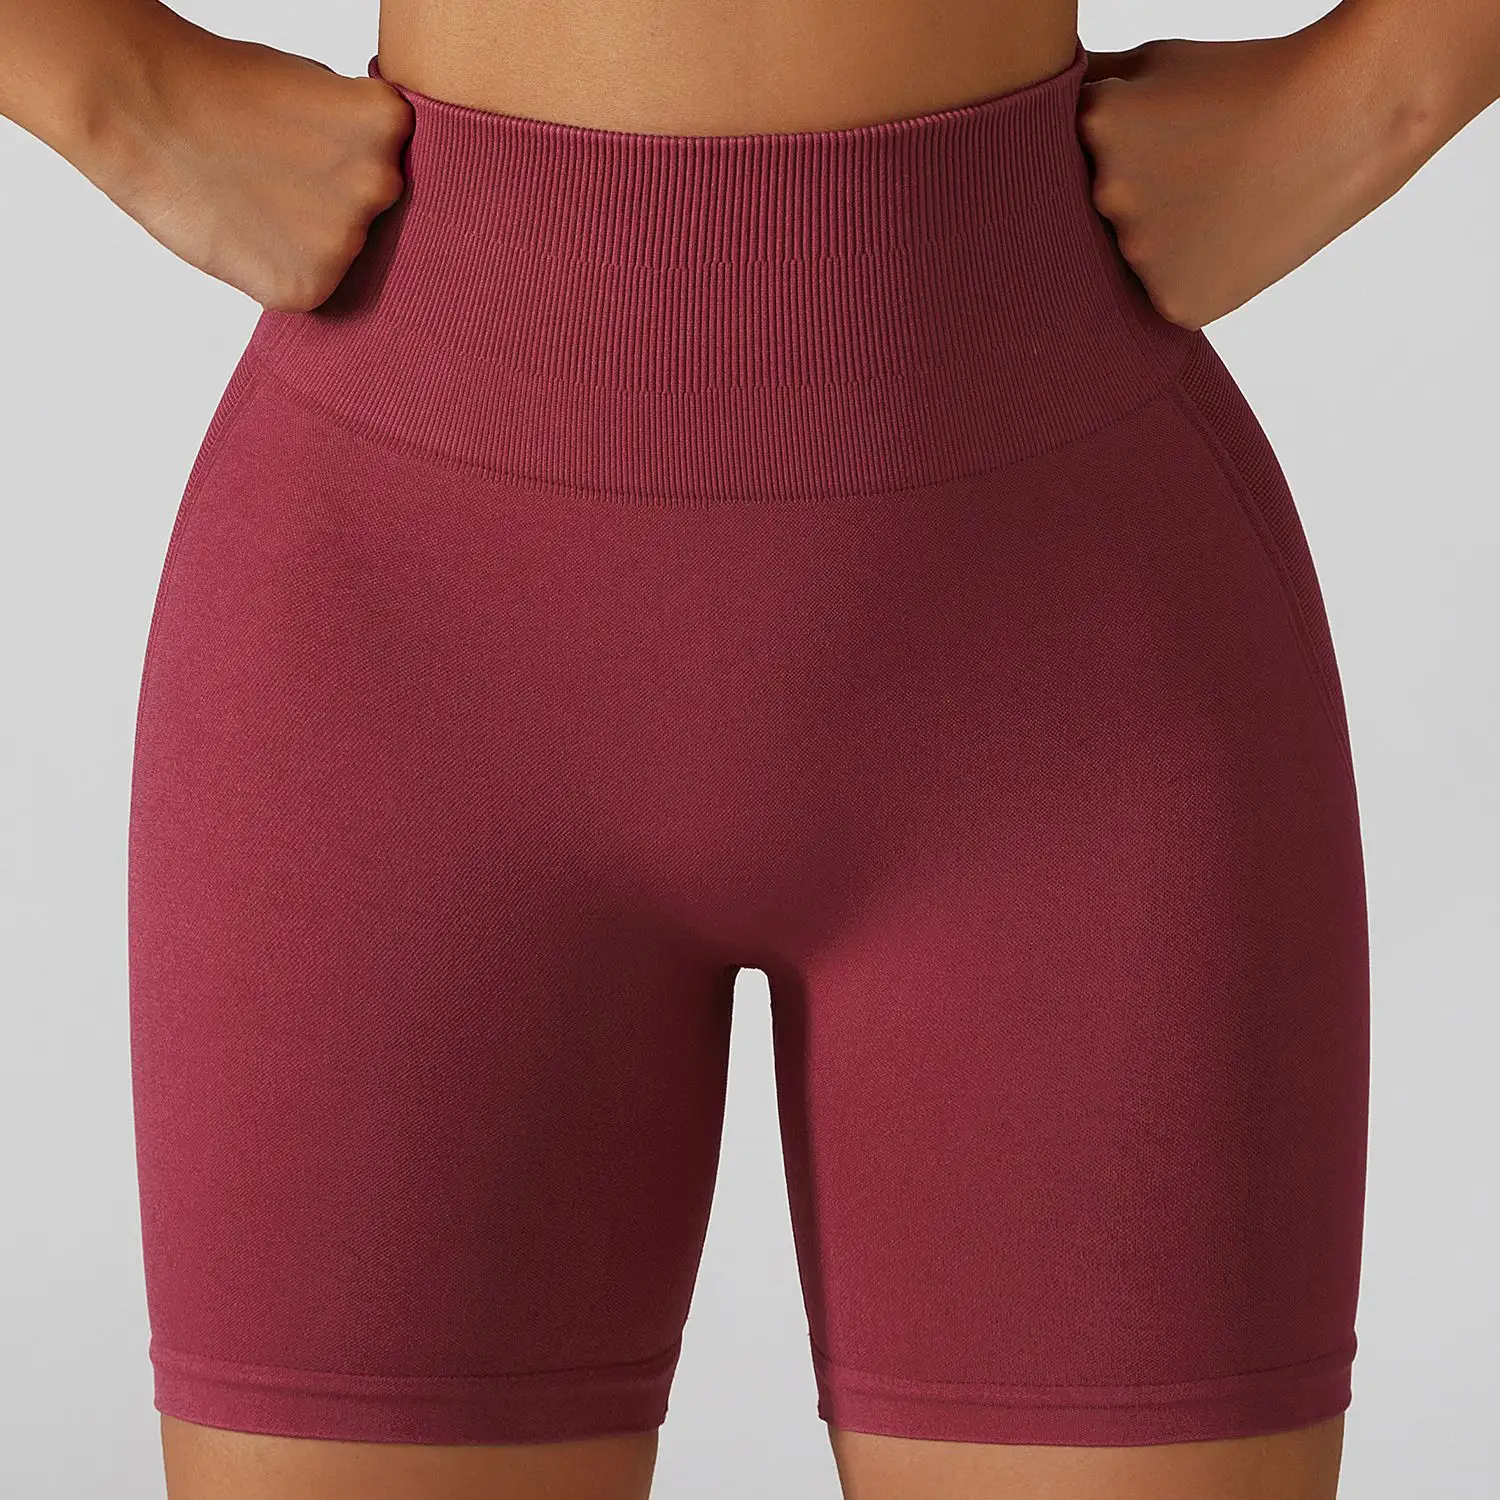 Pantaloncini da Yoga da palestra in Nylon Spandex Super morbido atletico nuovo arrivo da donna